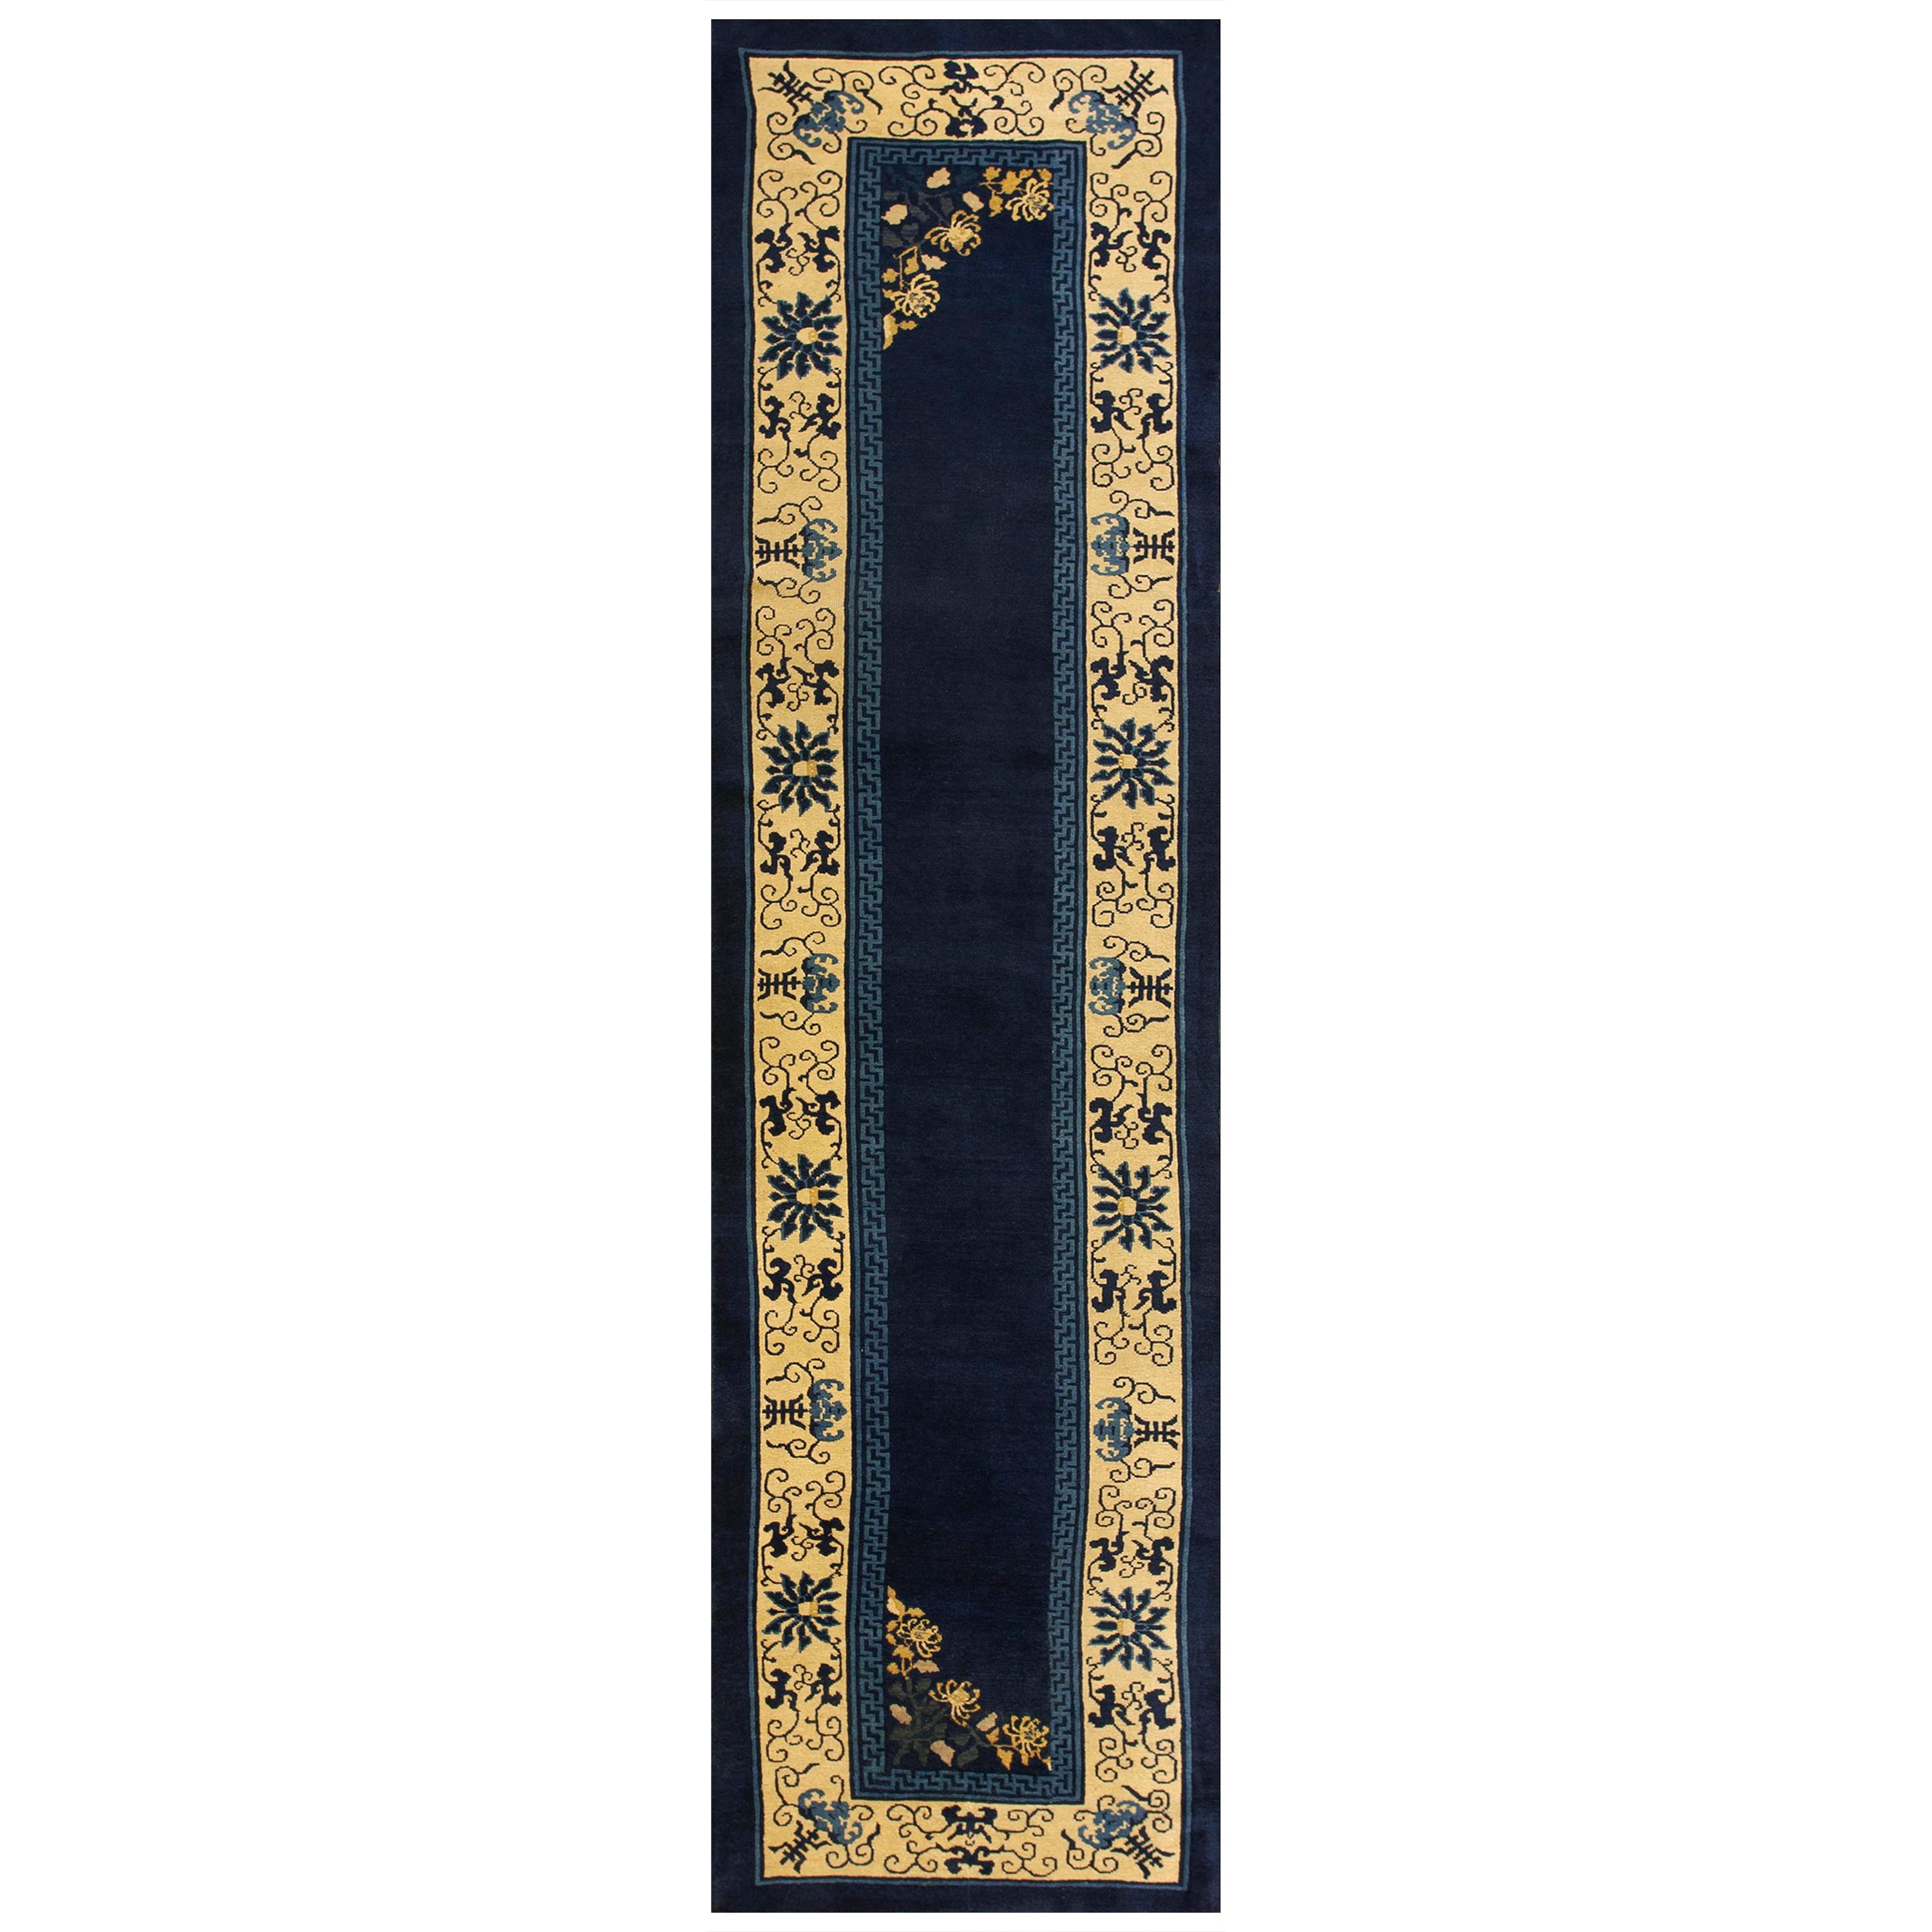 Chinesischer Peking-Teppich aus den 1920er Jahren ( 2'10" x 11'6" - 85 x 350 )